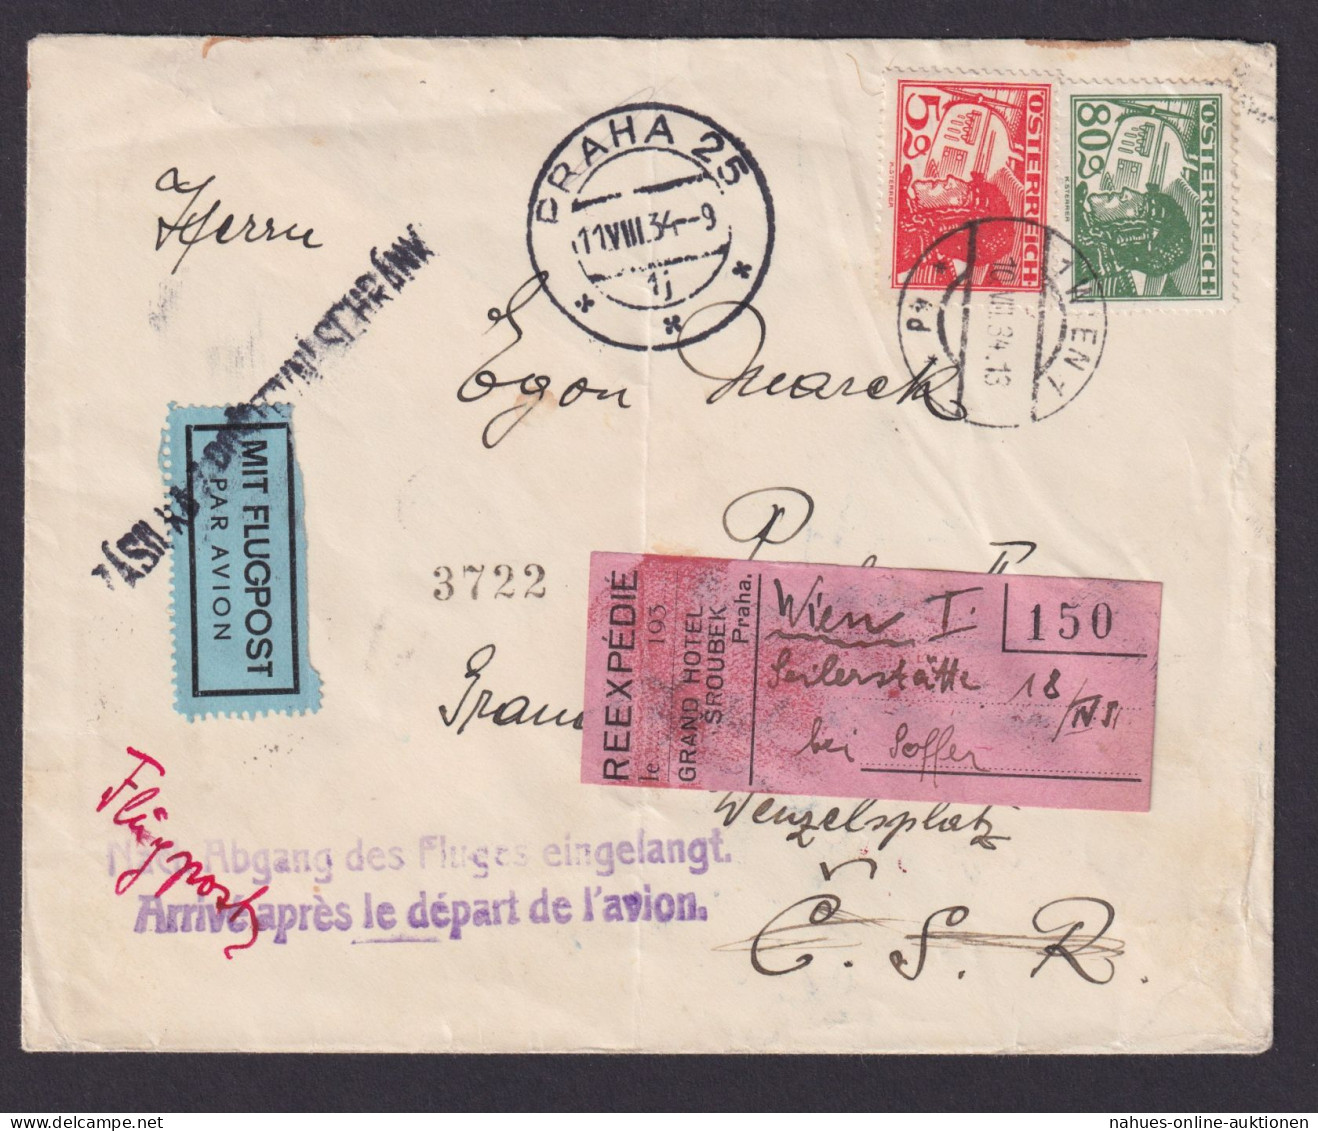 Flugpost Österreich Brief Wien Prag Viol. L2 Nach Abgang Des Fluges Eingelangt - Briefe U. Dokumente